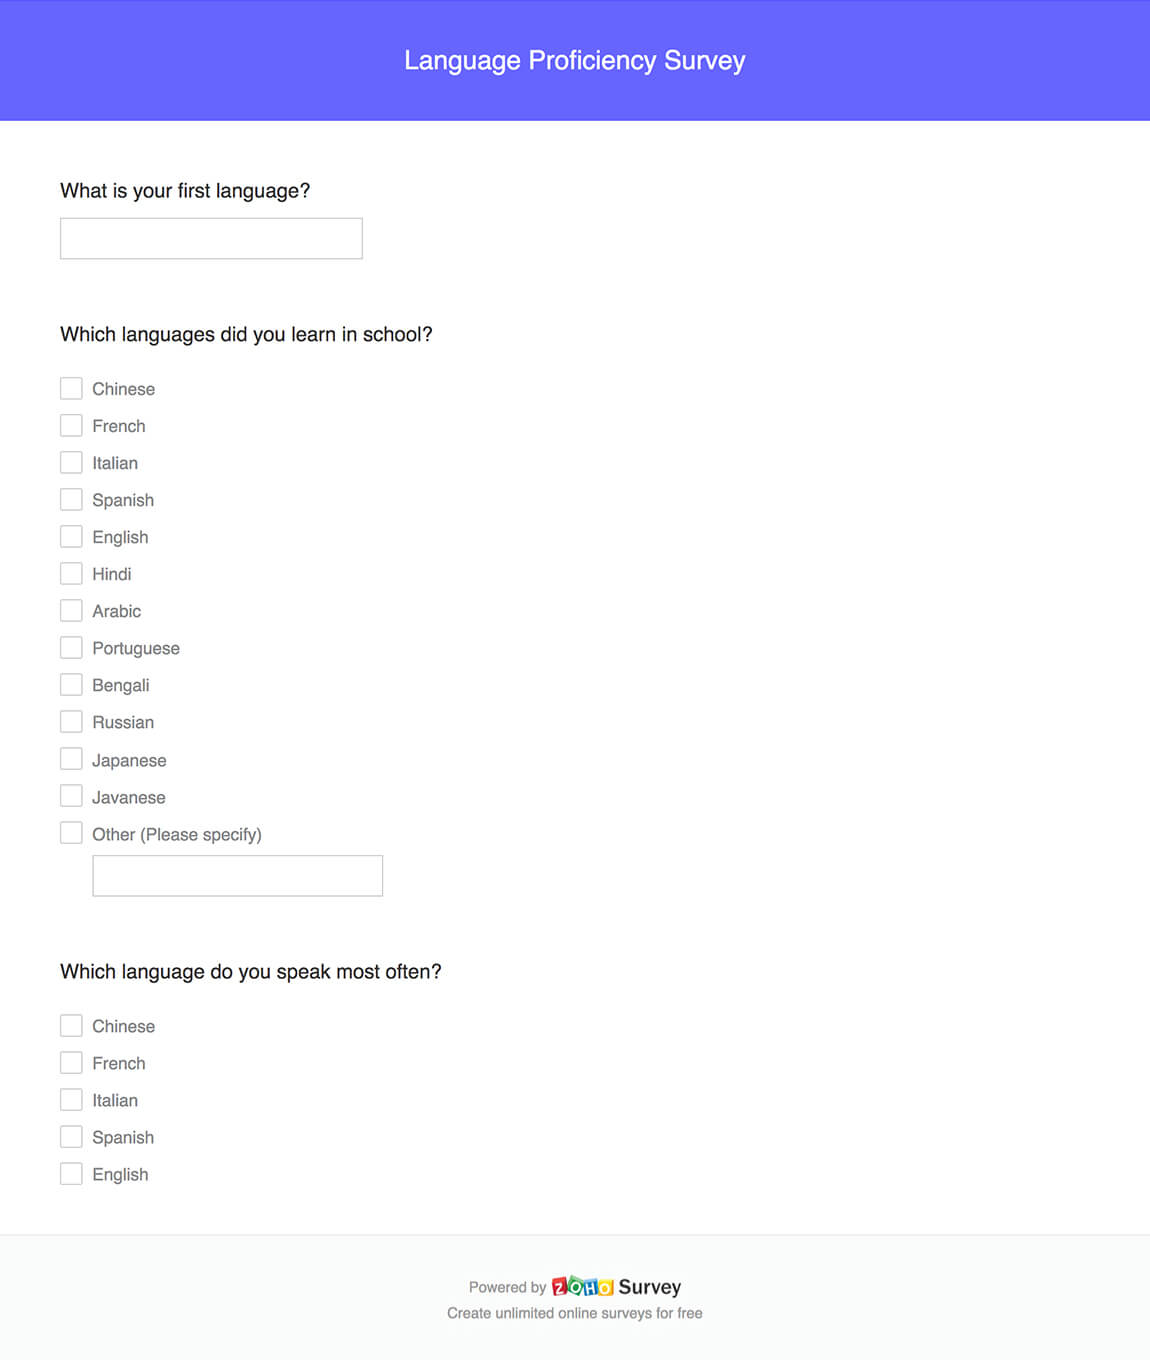 Language proficiency survey questionnaire template